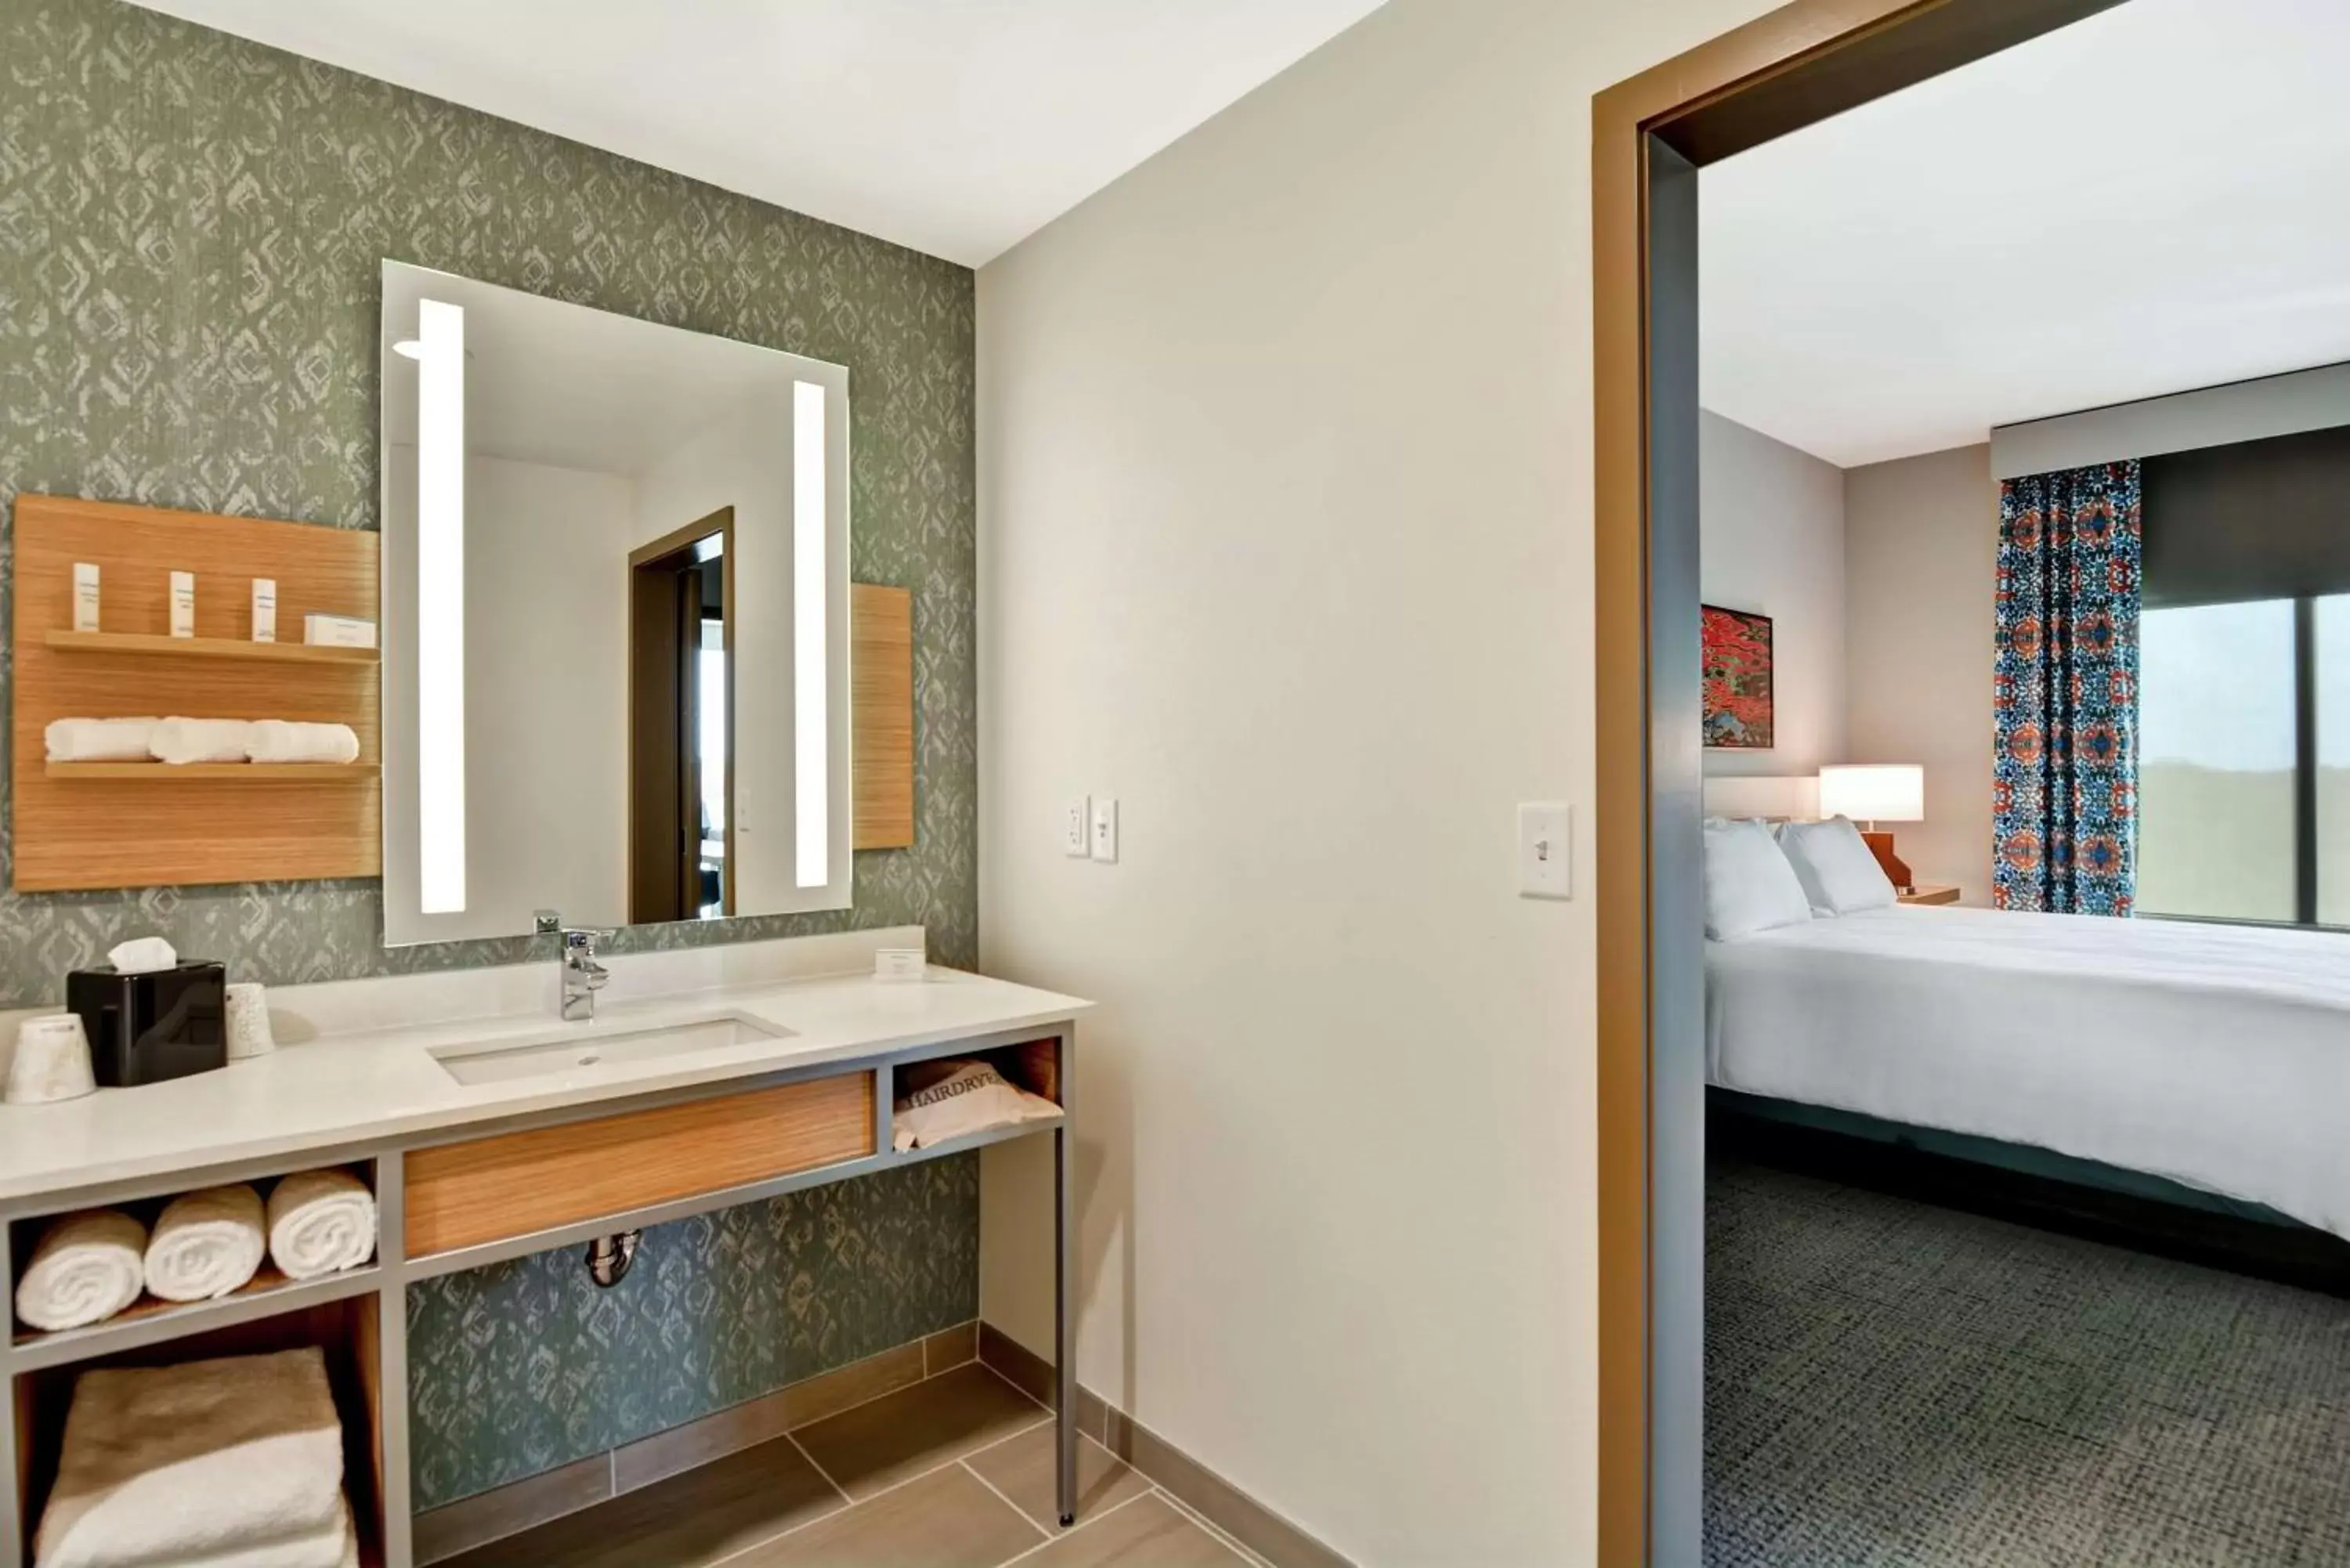 Bed, Bathroom in Hilton Garden Inn Biloxi